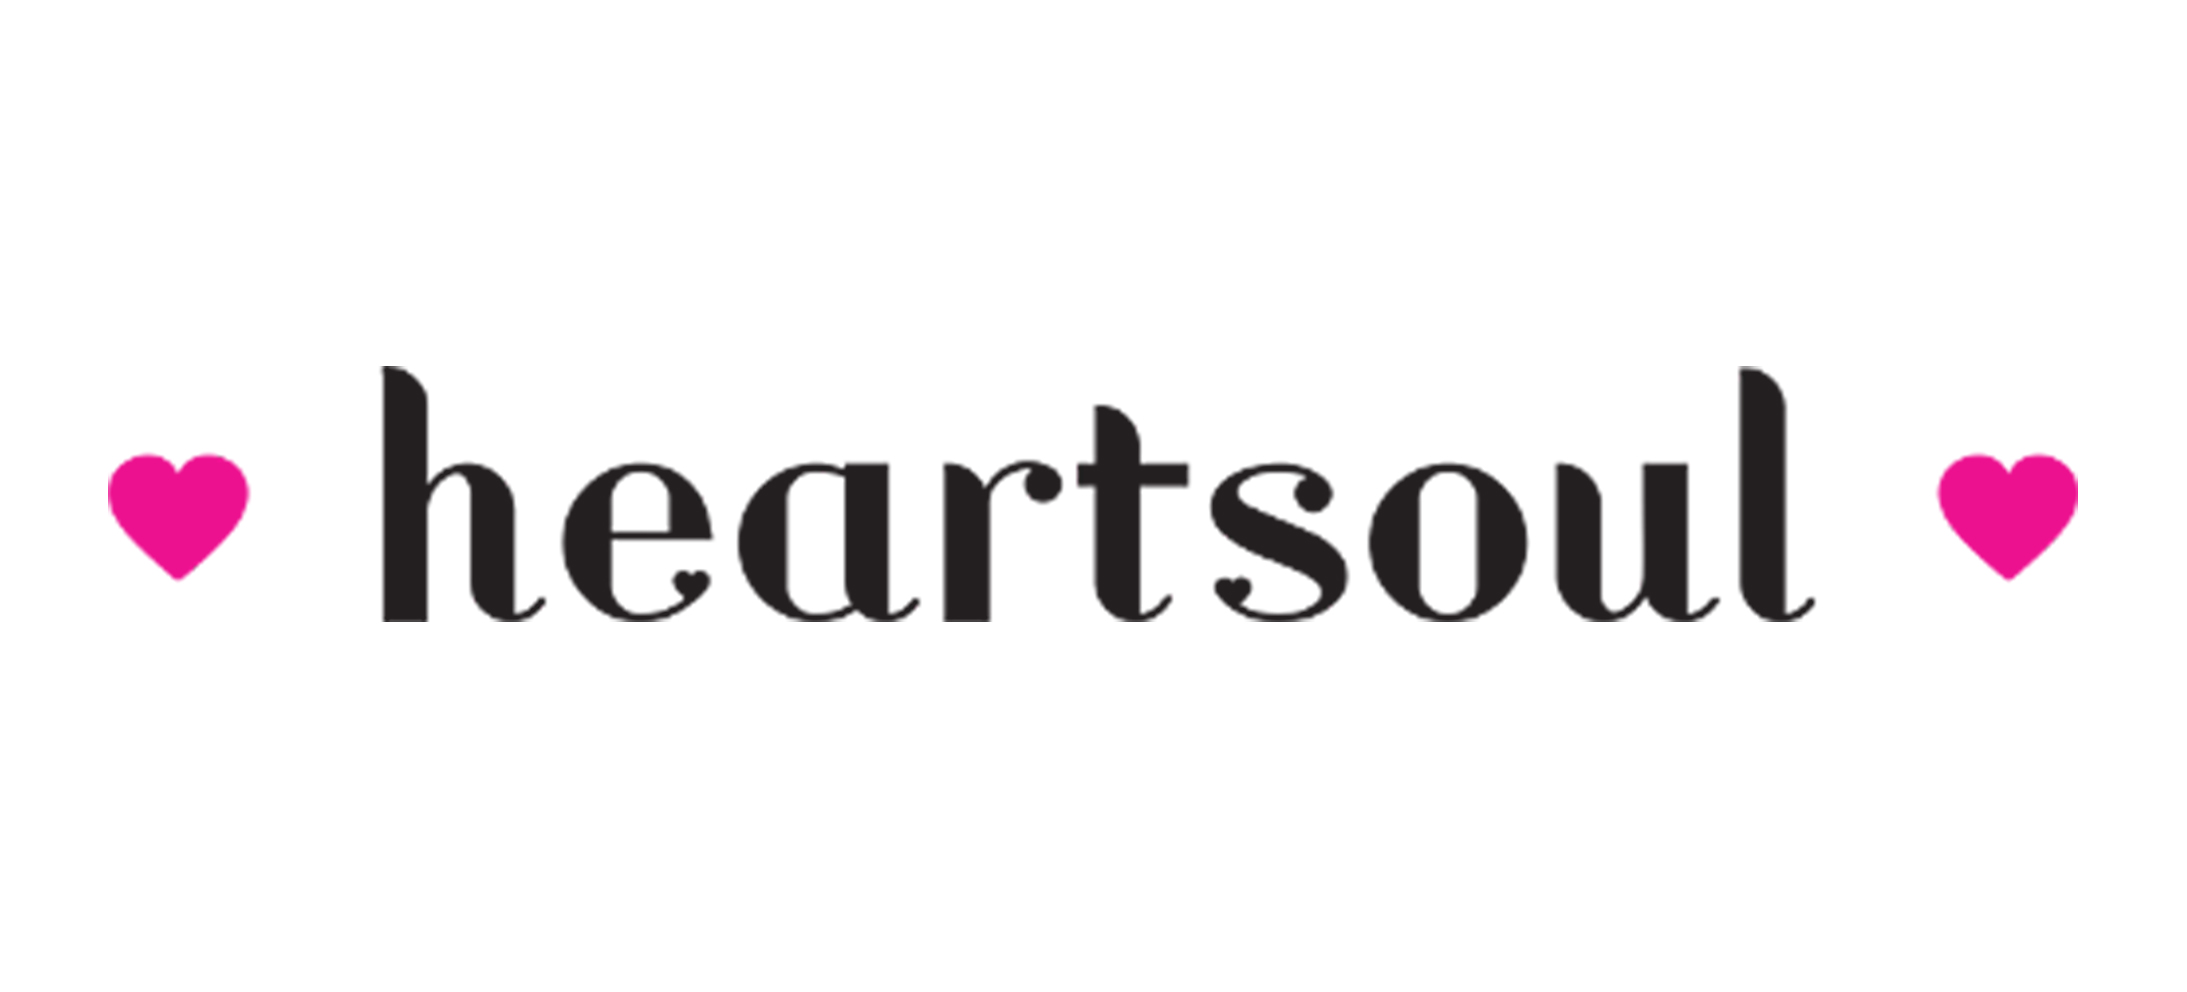 heart-soul-logo.jpg